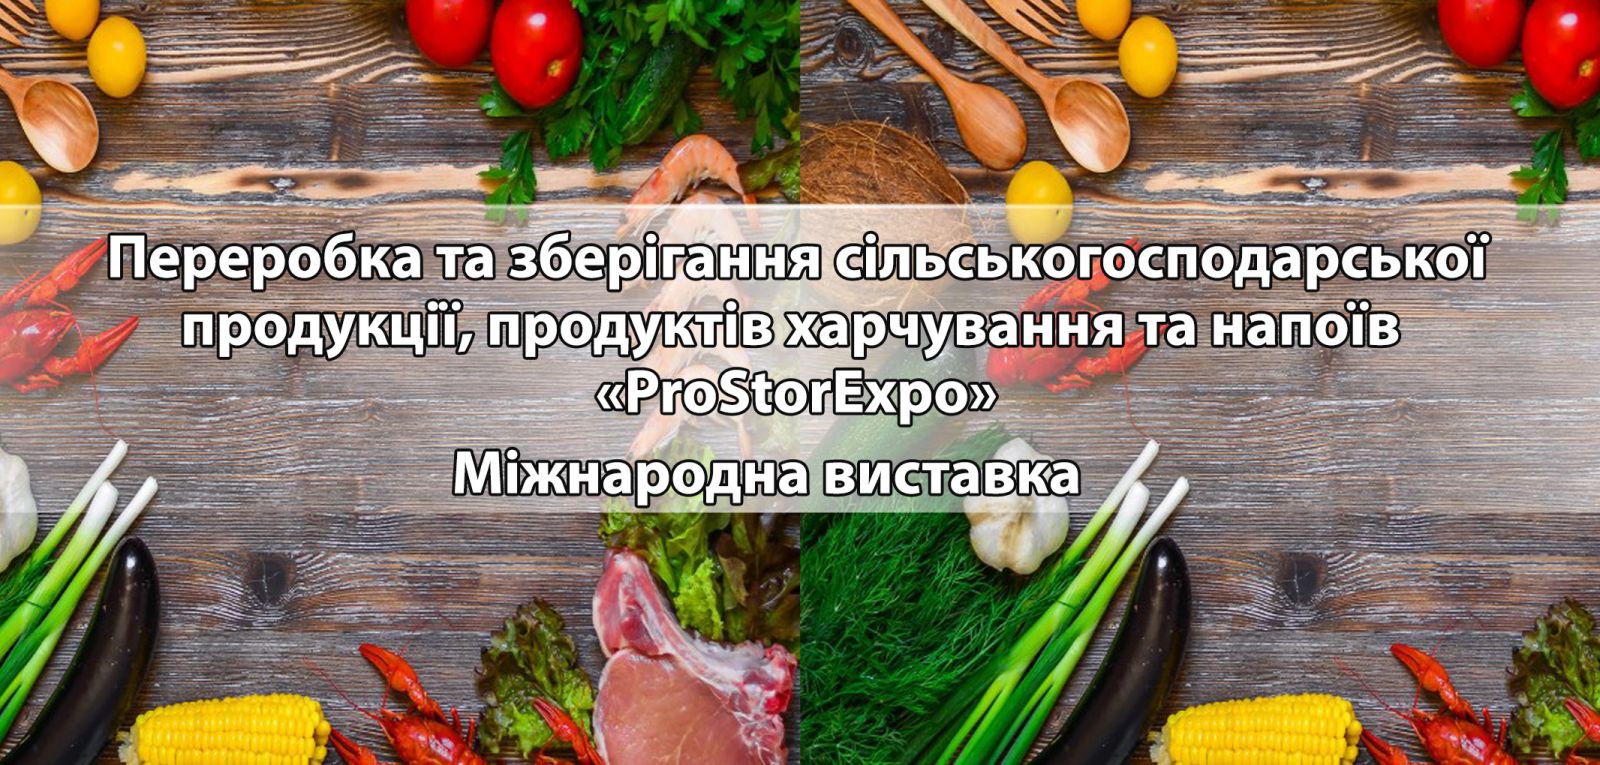 Переробка та зберігання сільськогосподарської продукції, продуктів харчування та напоїв «ProStorExpo» Міжнародна виставка